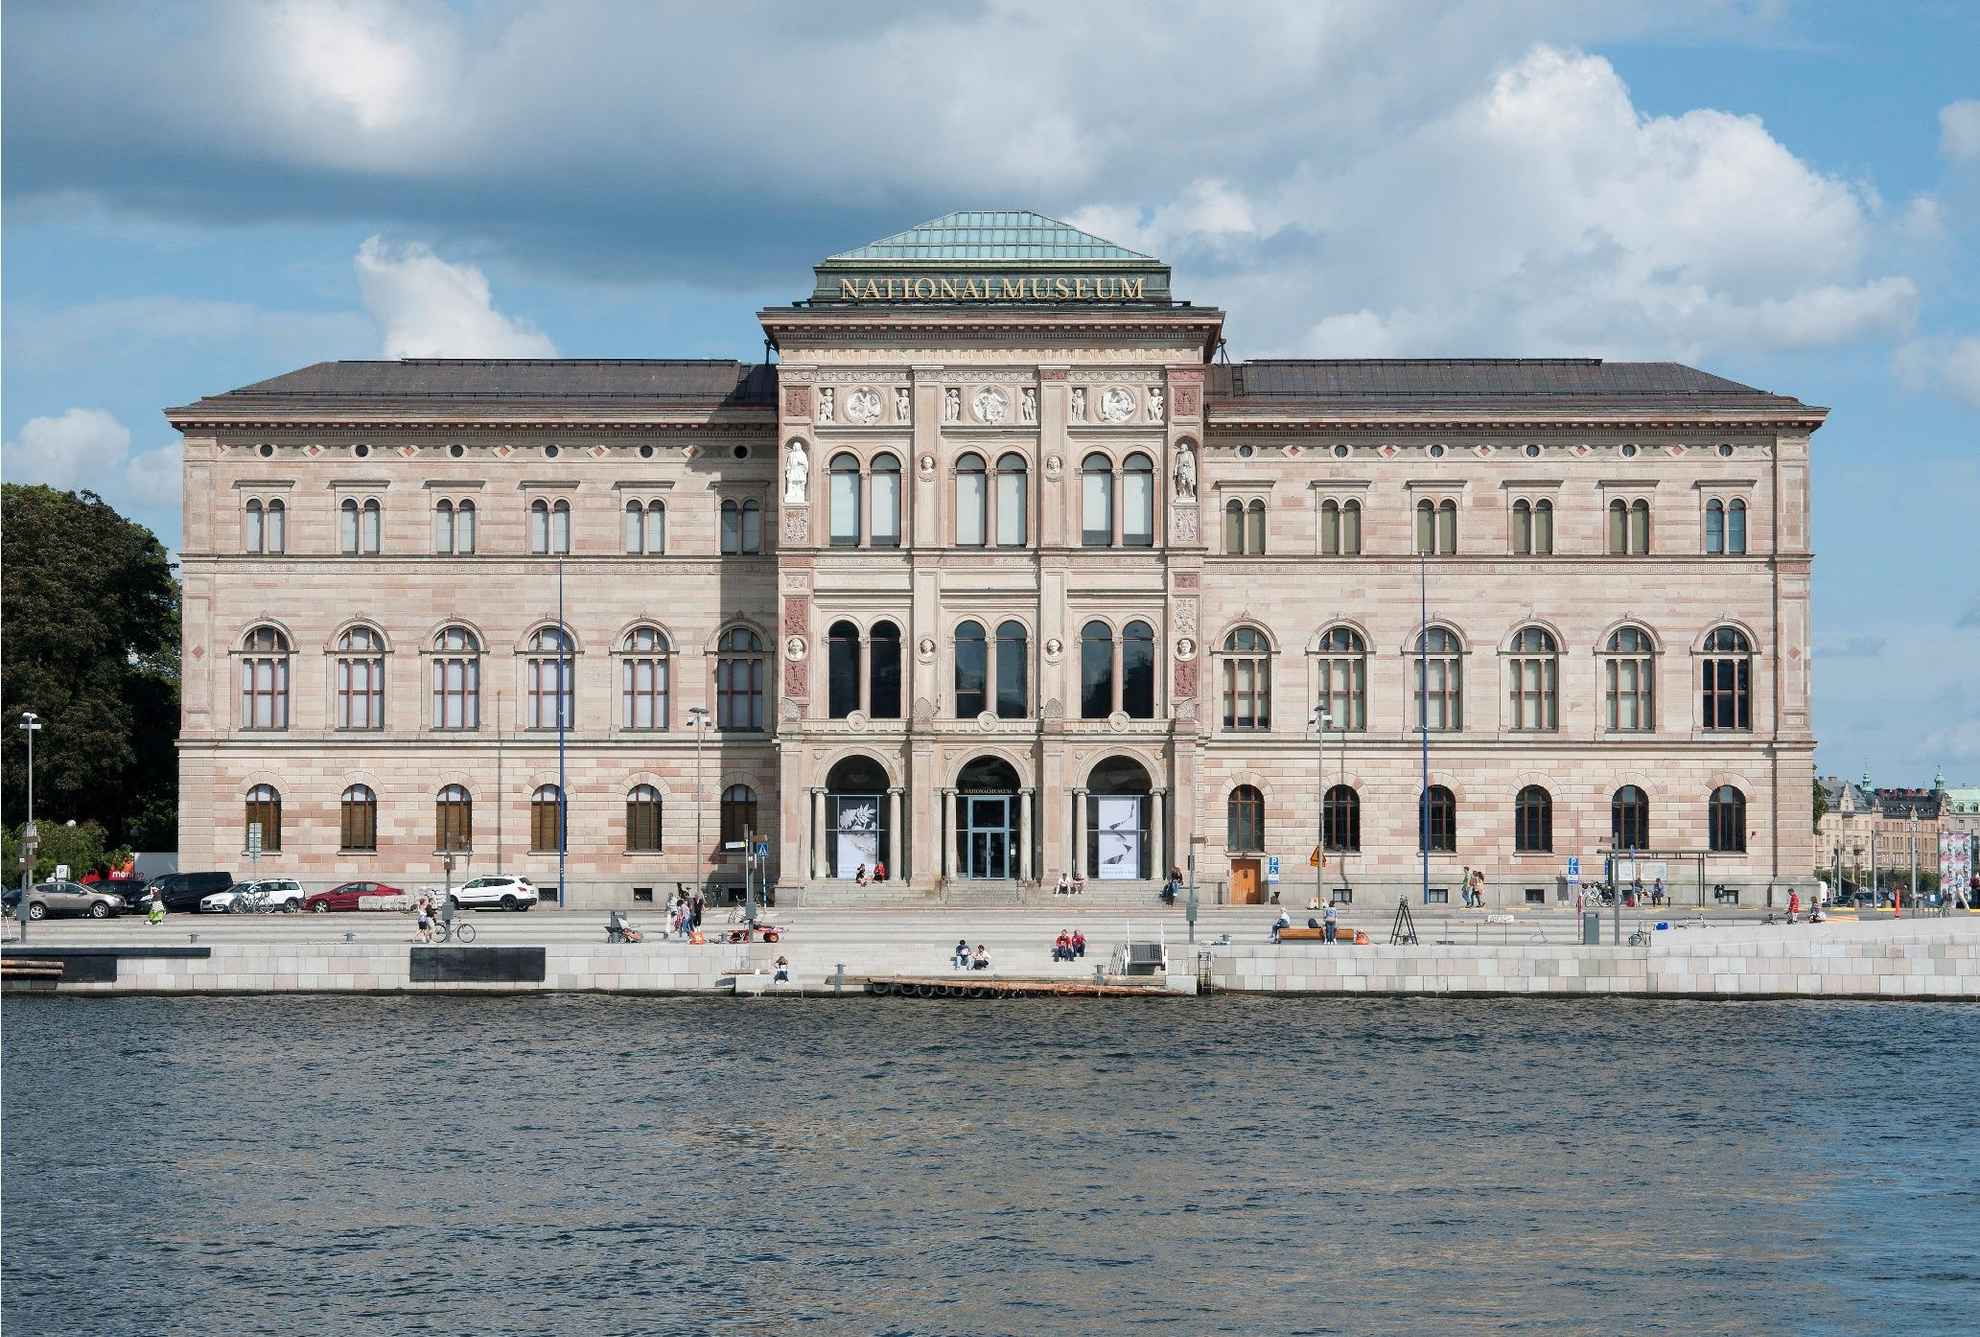 Het historische gebouw waarin het Nationalmuseum in Stockholm is gevestigd, gezien vanaf het water.